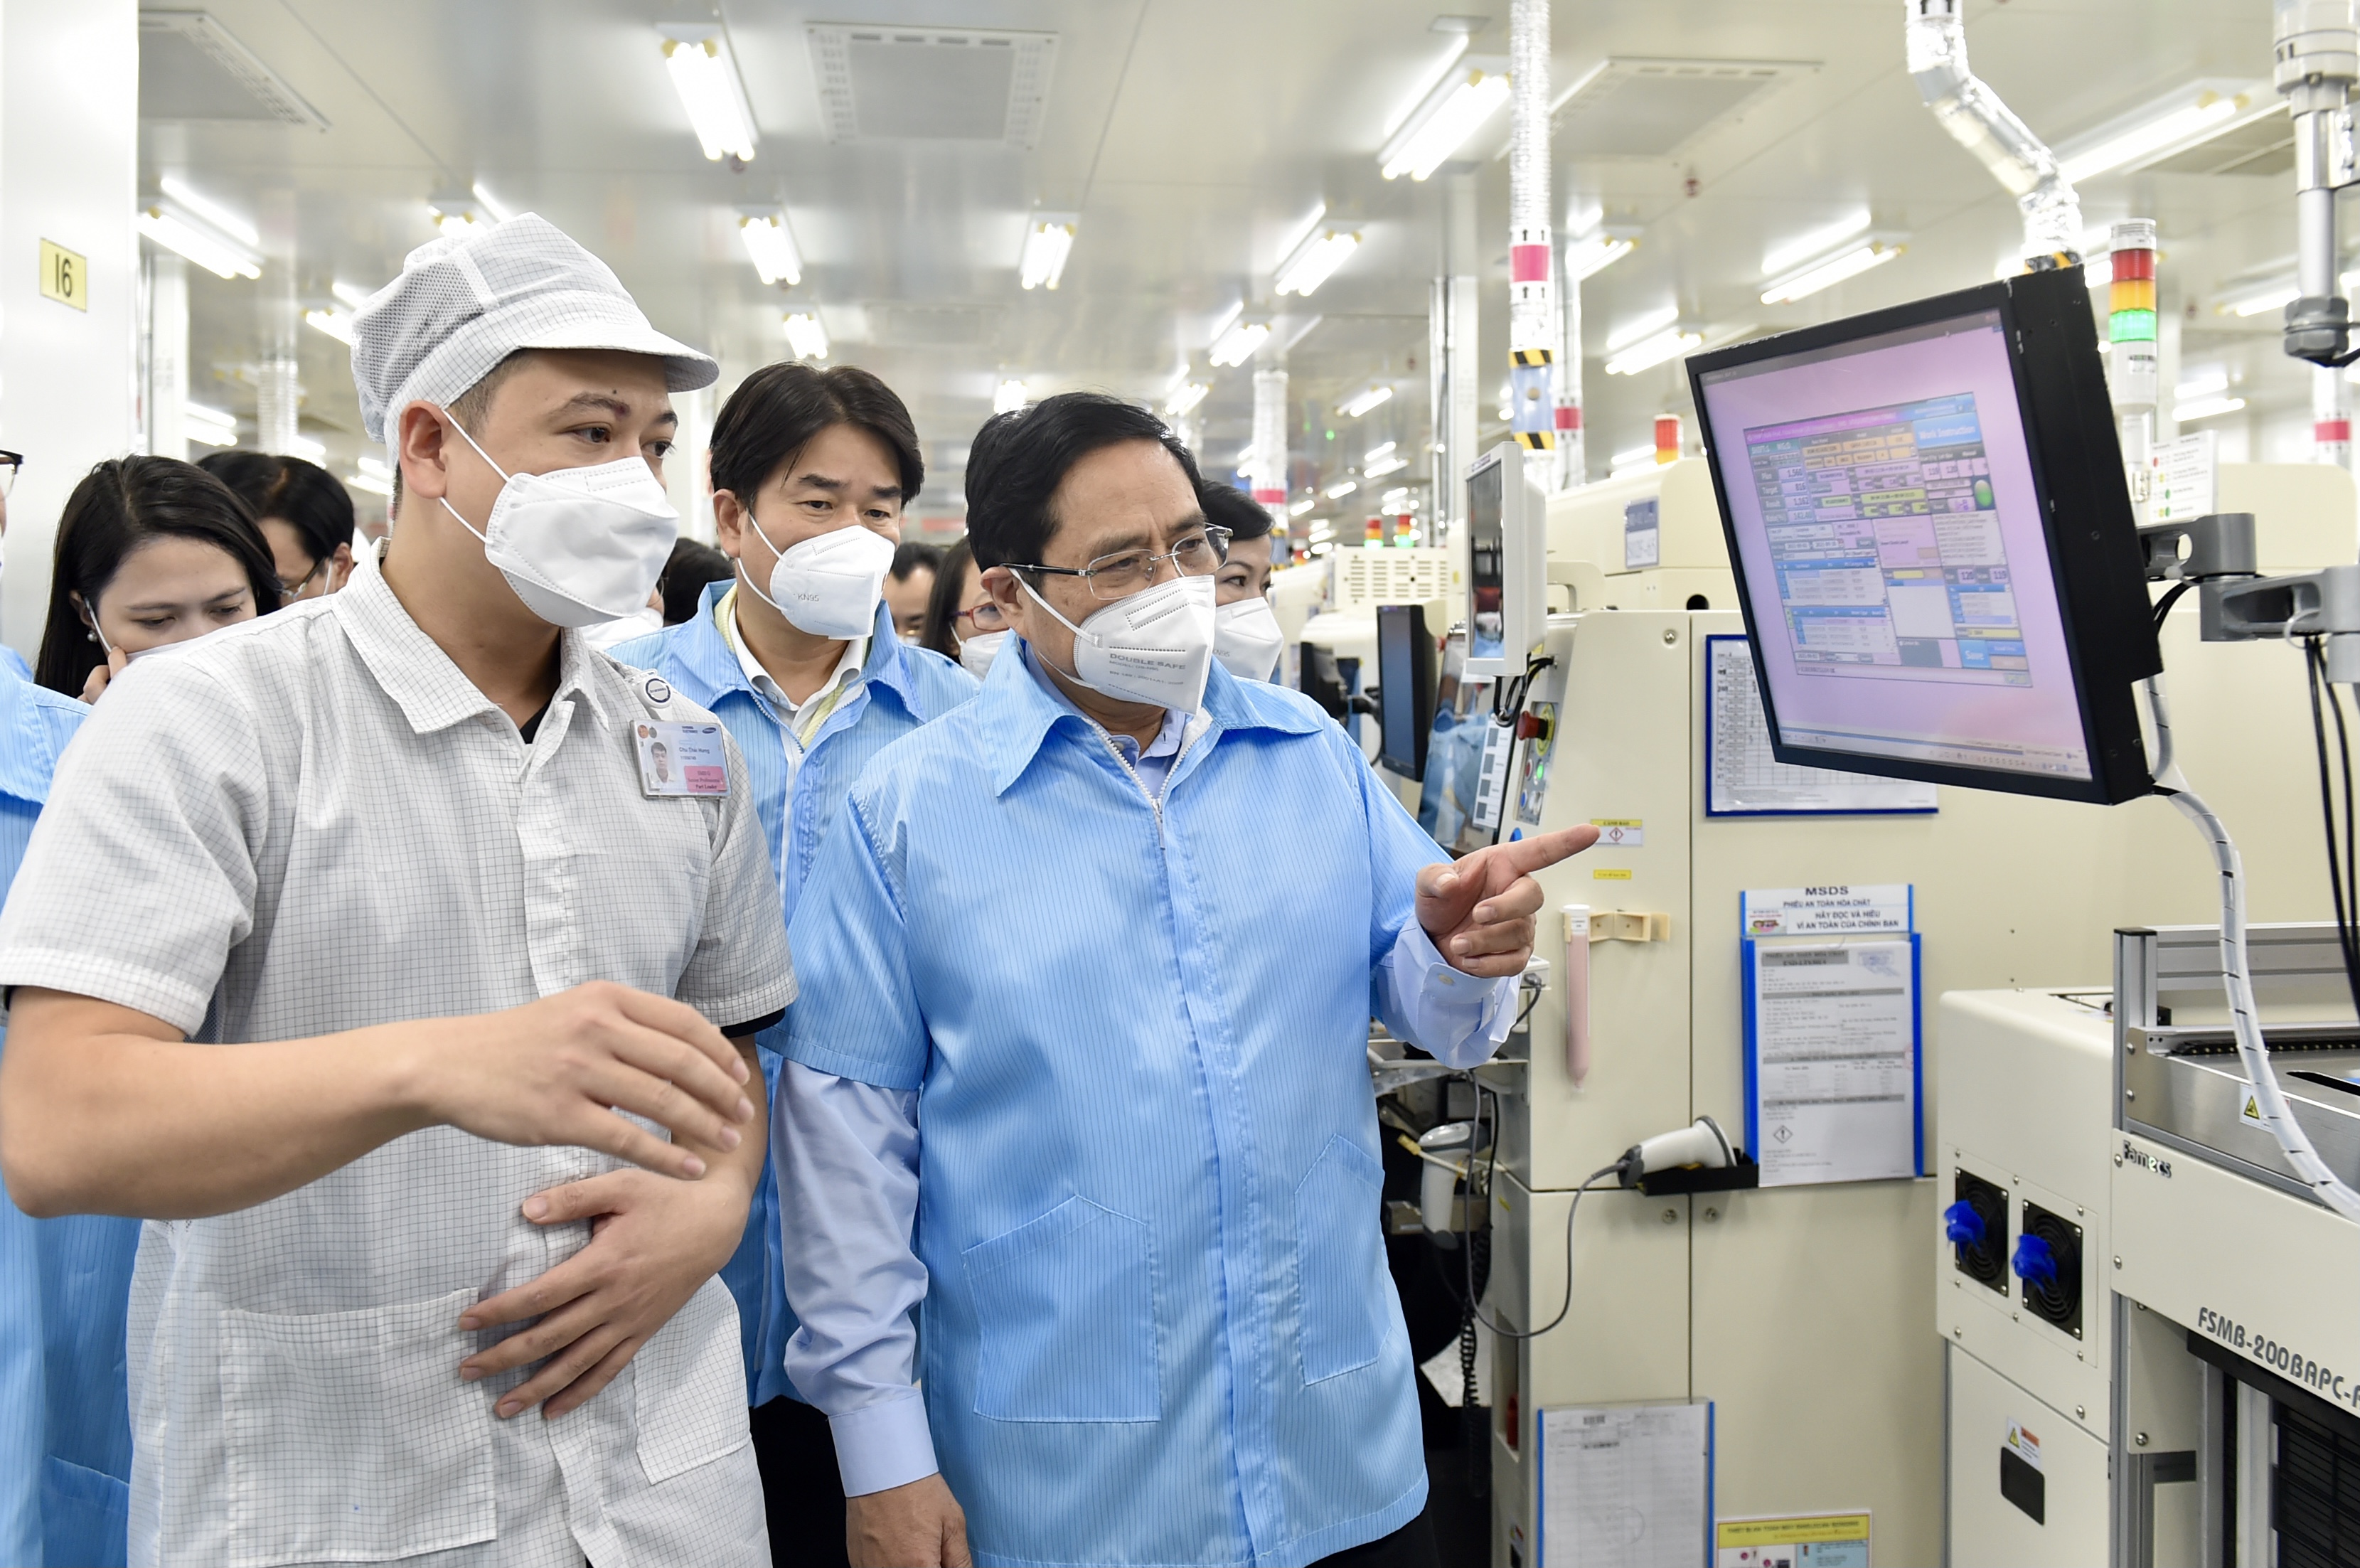 Thủ tướng nghe đại diện Công ty báo cáo về tình hình hoạt động trong bối cảnh dịch bệnh COVID-19 diễn biến phức tạp - Ảnh VGP/Nhật Bắc